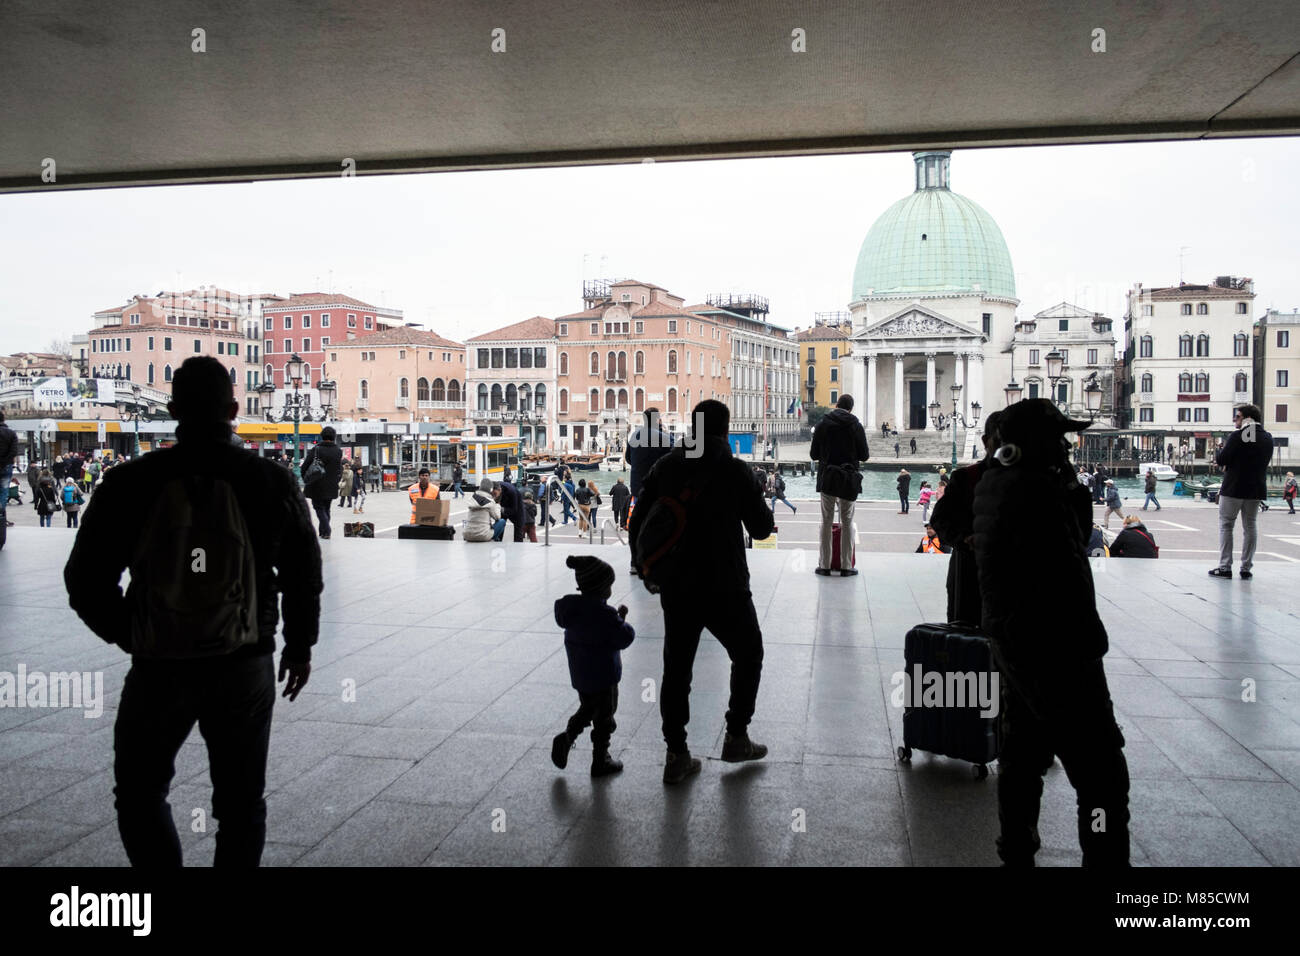 Venise, Italie : à la gare de Santa Lucia Banque D'Images